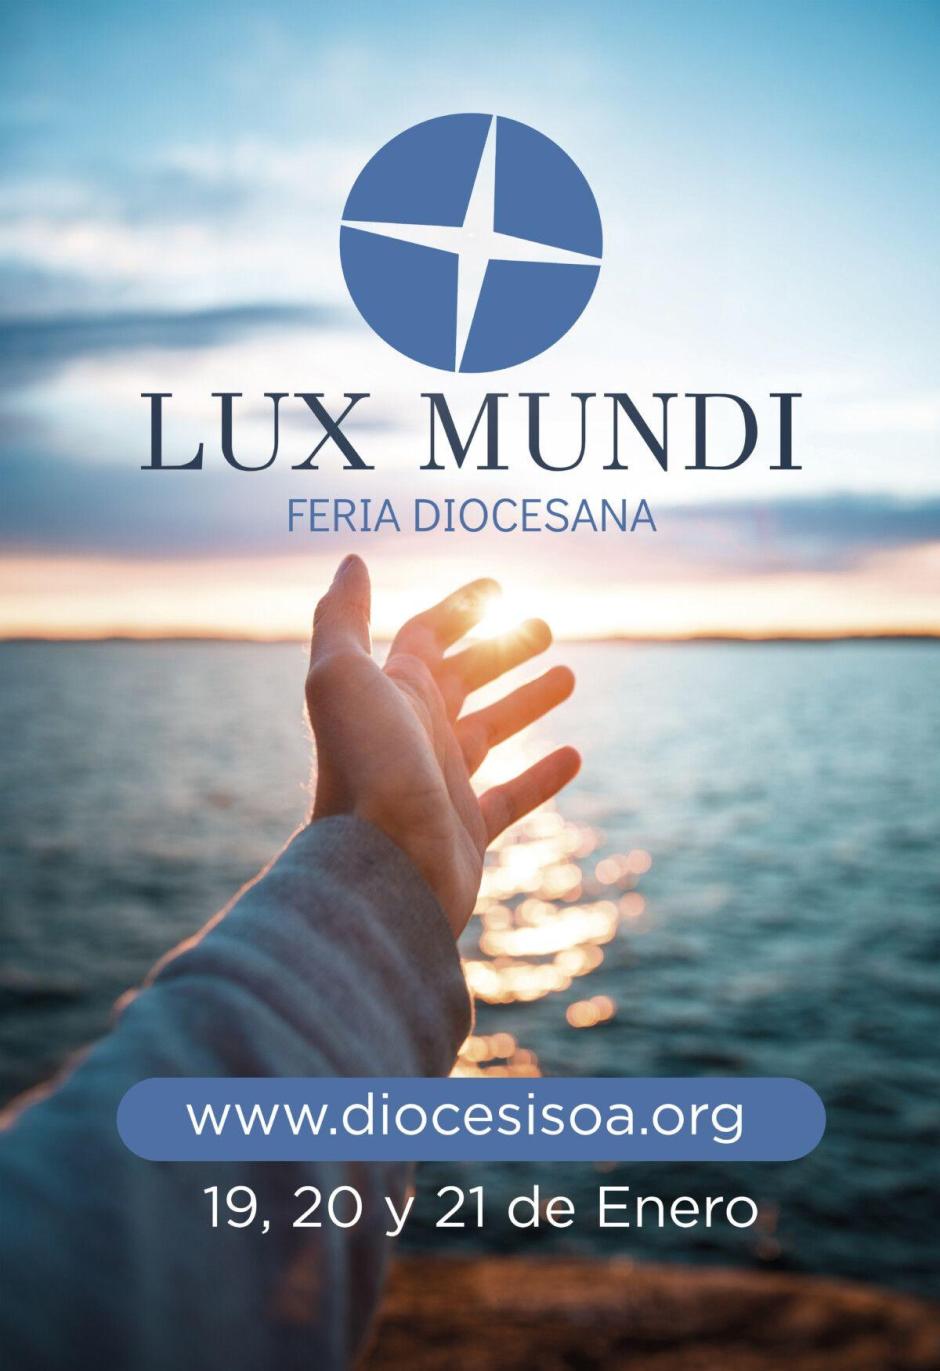 I Feria Diocesana 'Lux Mundi'